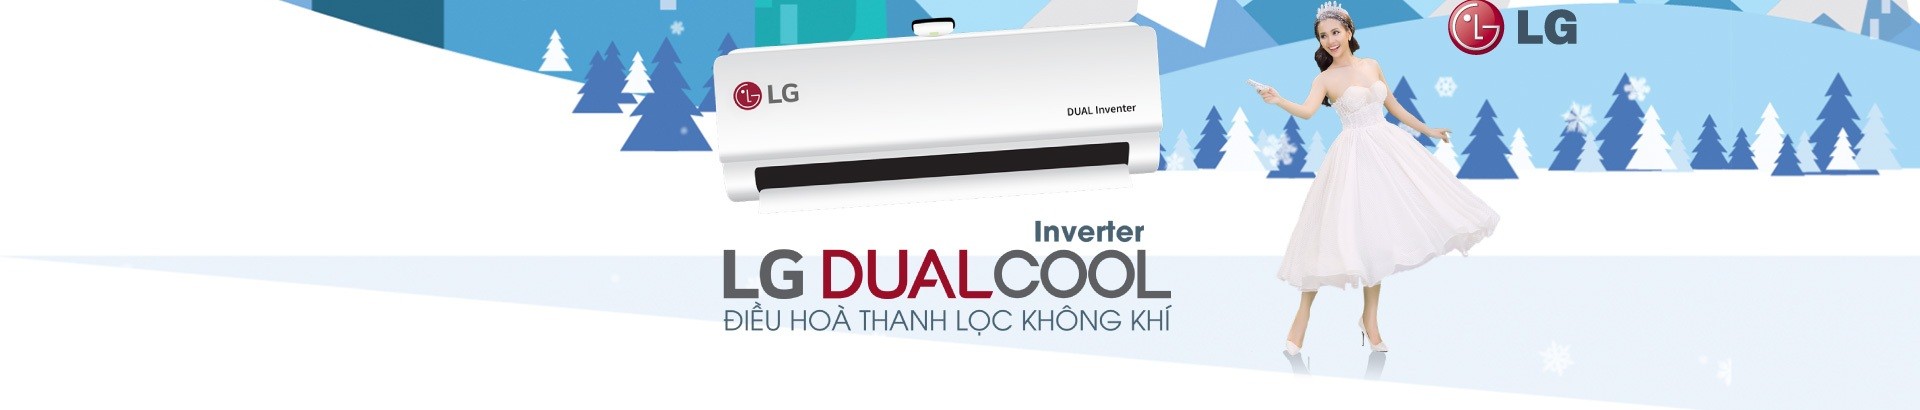 Máy lạnh LG - Giá tốt bất ngờ